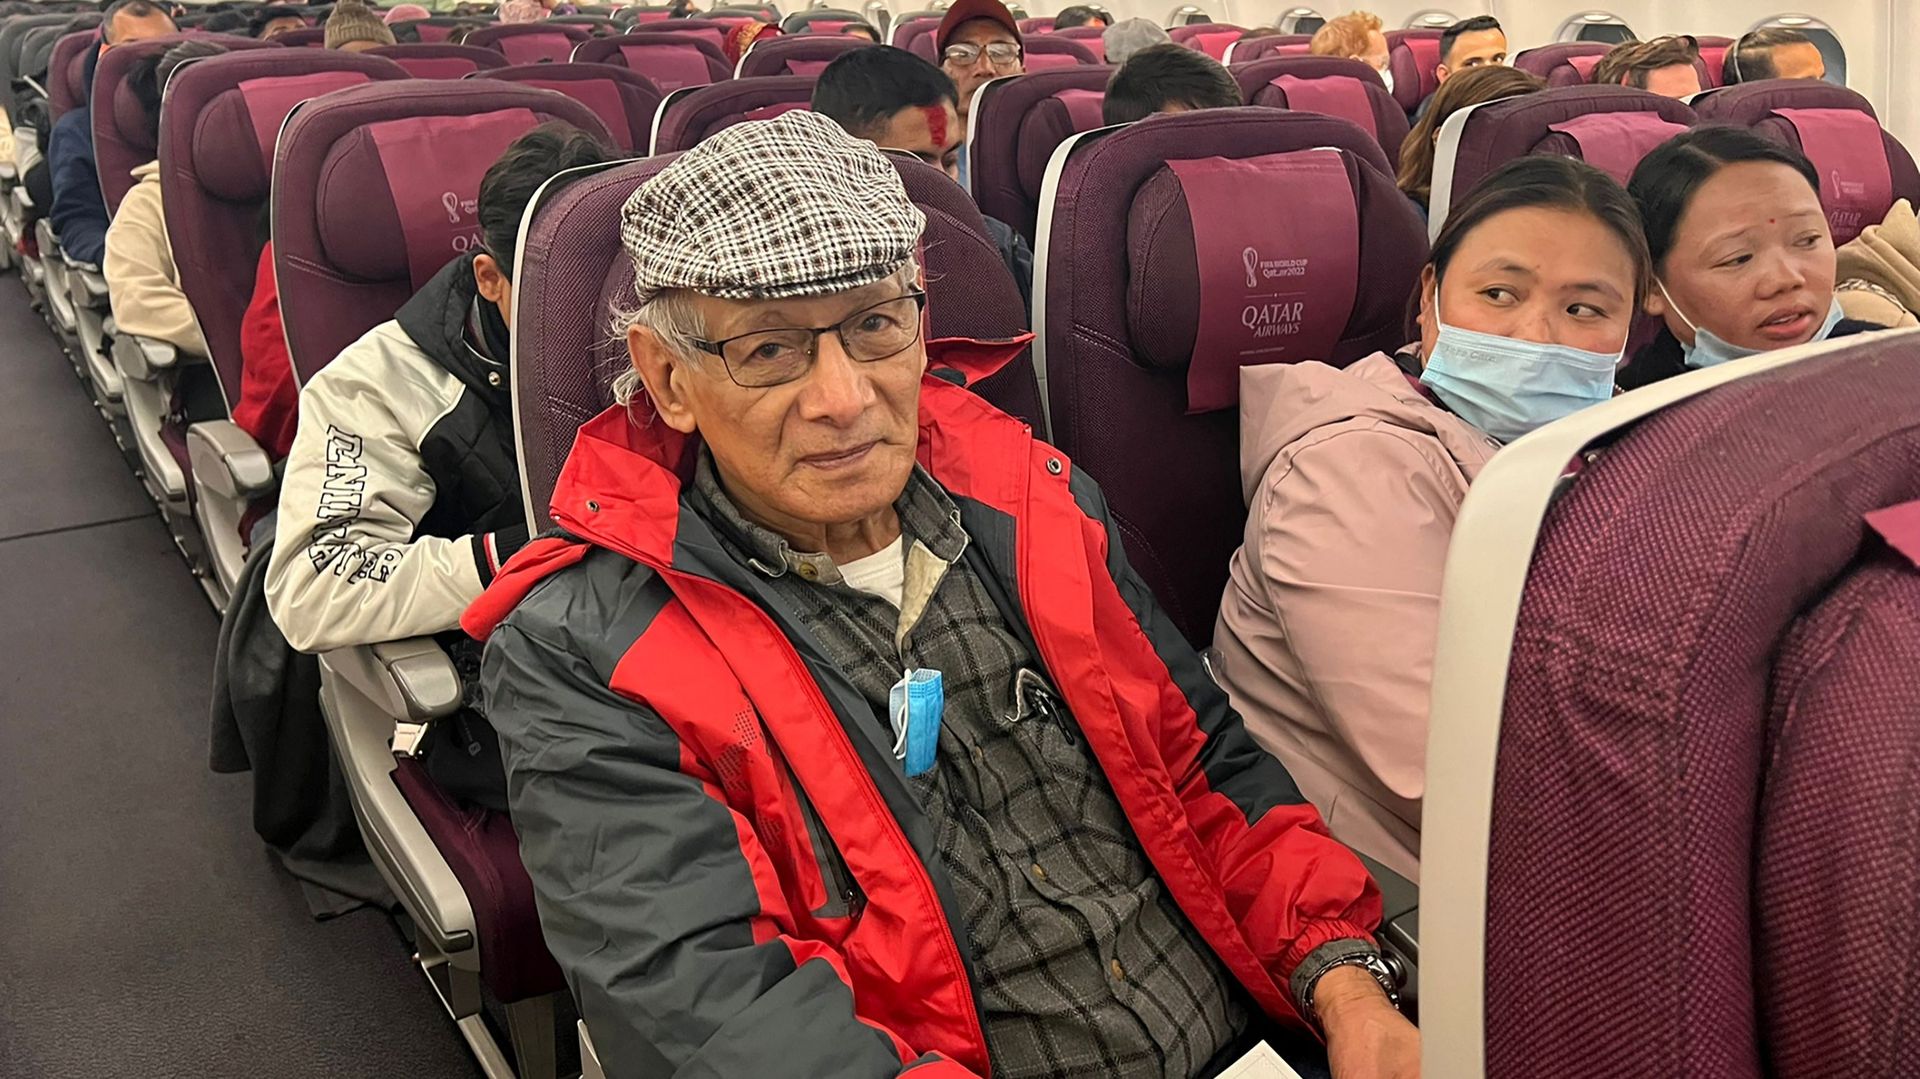 Le tueur en série français Charles Sobhraj est assis dans un avion reliant Katmandou à la France, le 23 décembre 2022. - Le tueur en série français Charles Sobhraj a quitté la détention de l'immigration au Népal le 23 décembre 2022 en direction de l'aérop